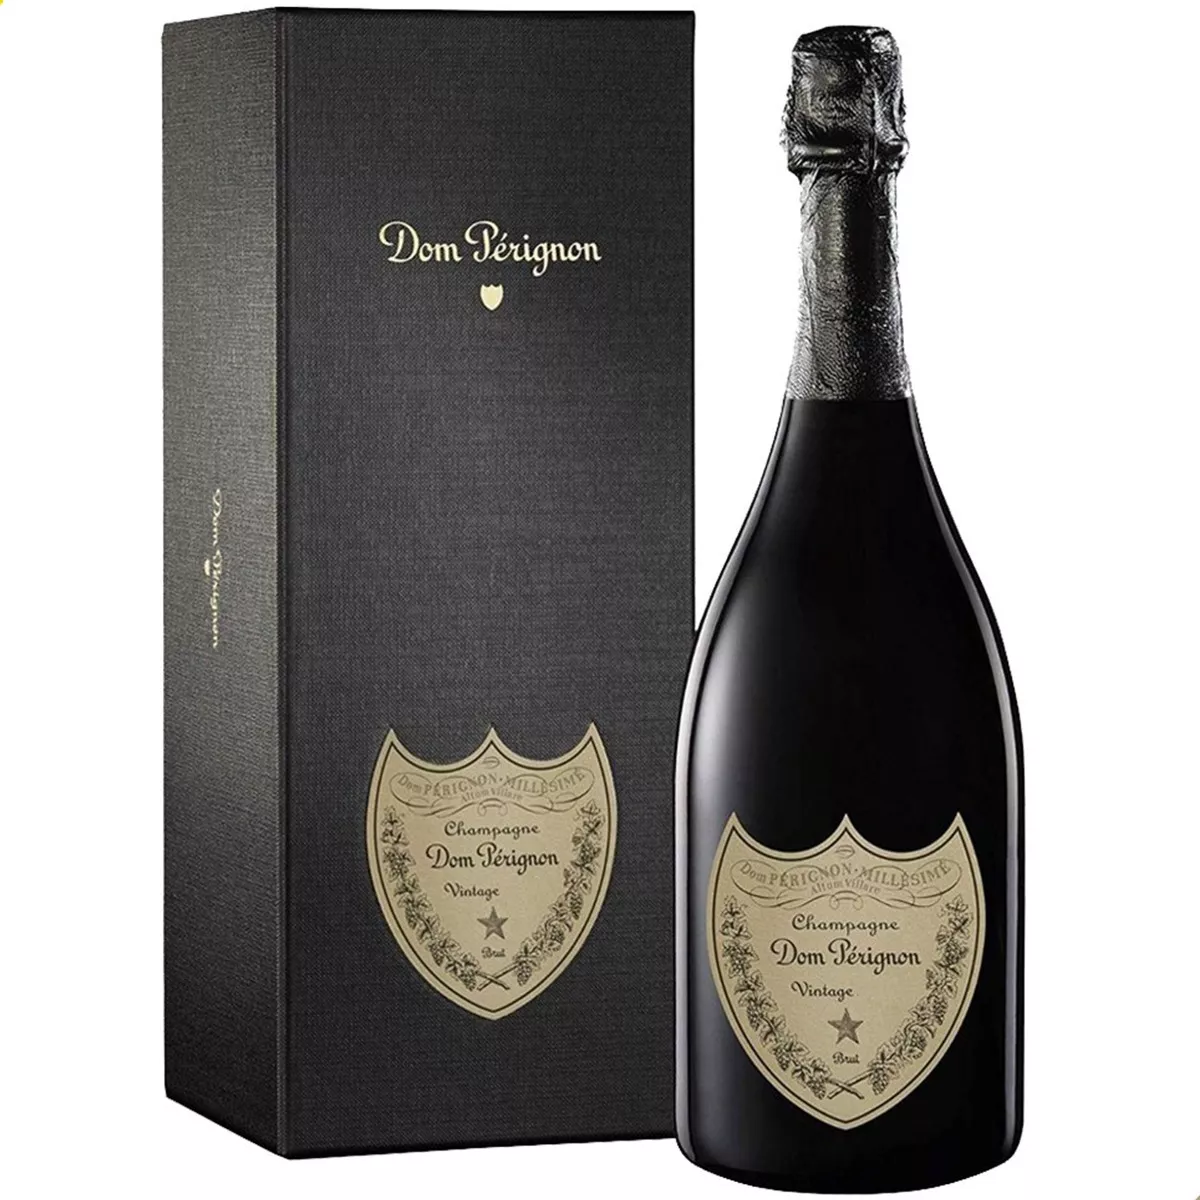 Primera imagen para búsqueda de champagne dom perignon